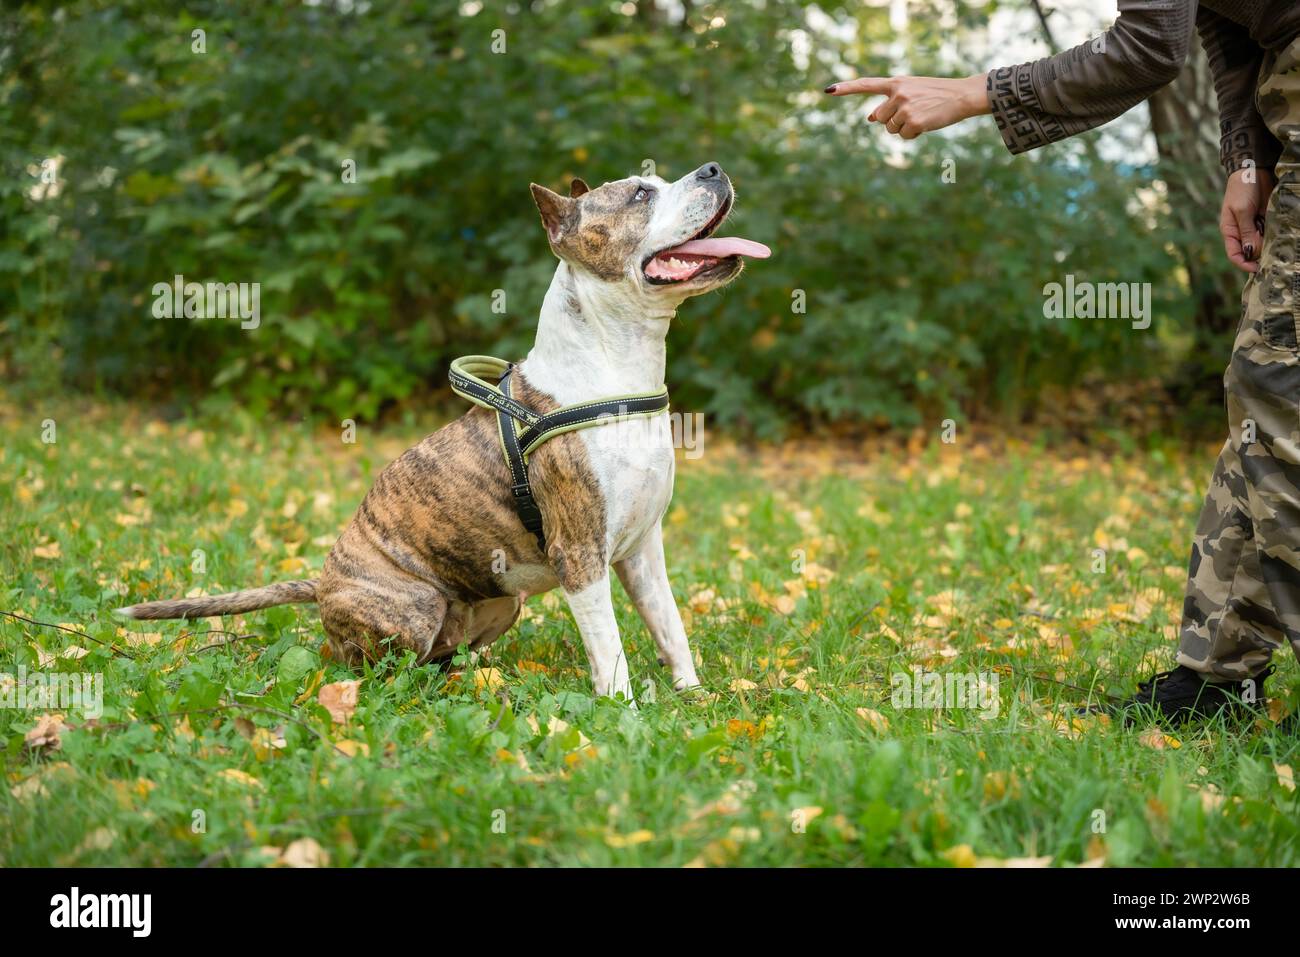 Uno Staffordshire Terrier viene addestrato in un parco all'aperto, impegnato in esercizi di obbedienza, attività ludiche e concentrandosi sul comman dell'allenatore Foto Stock